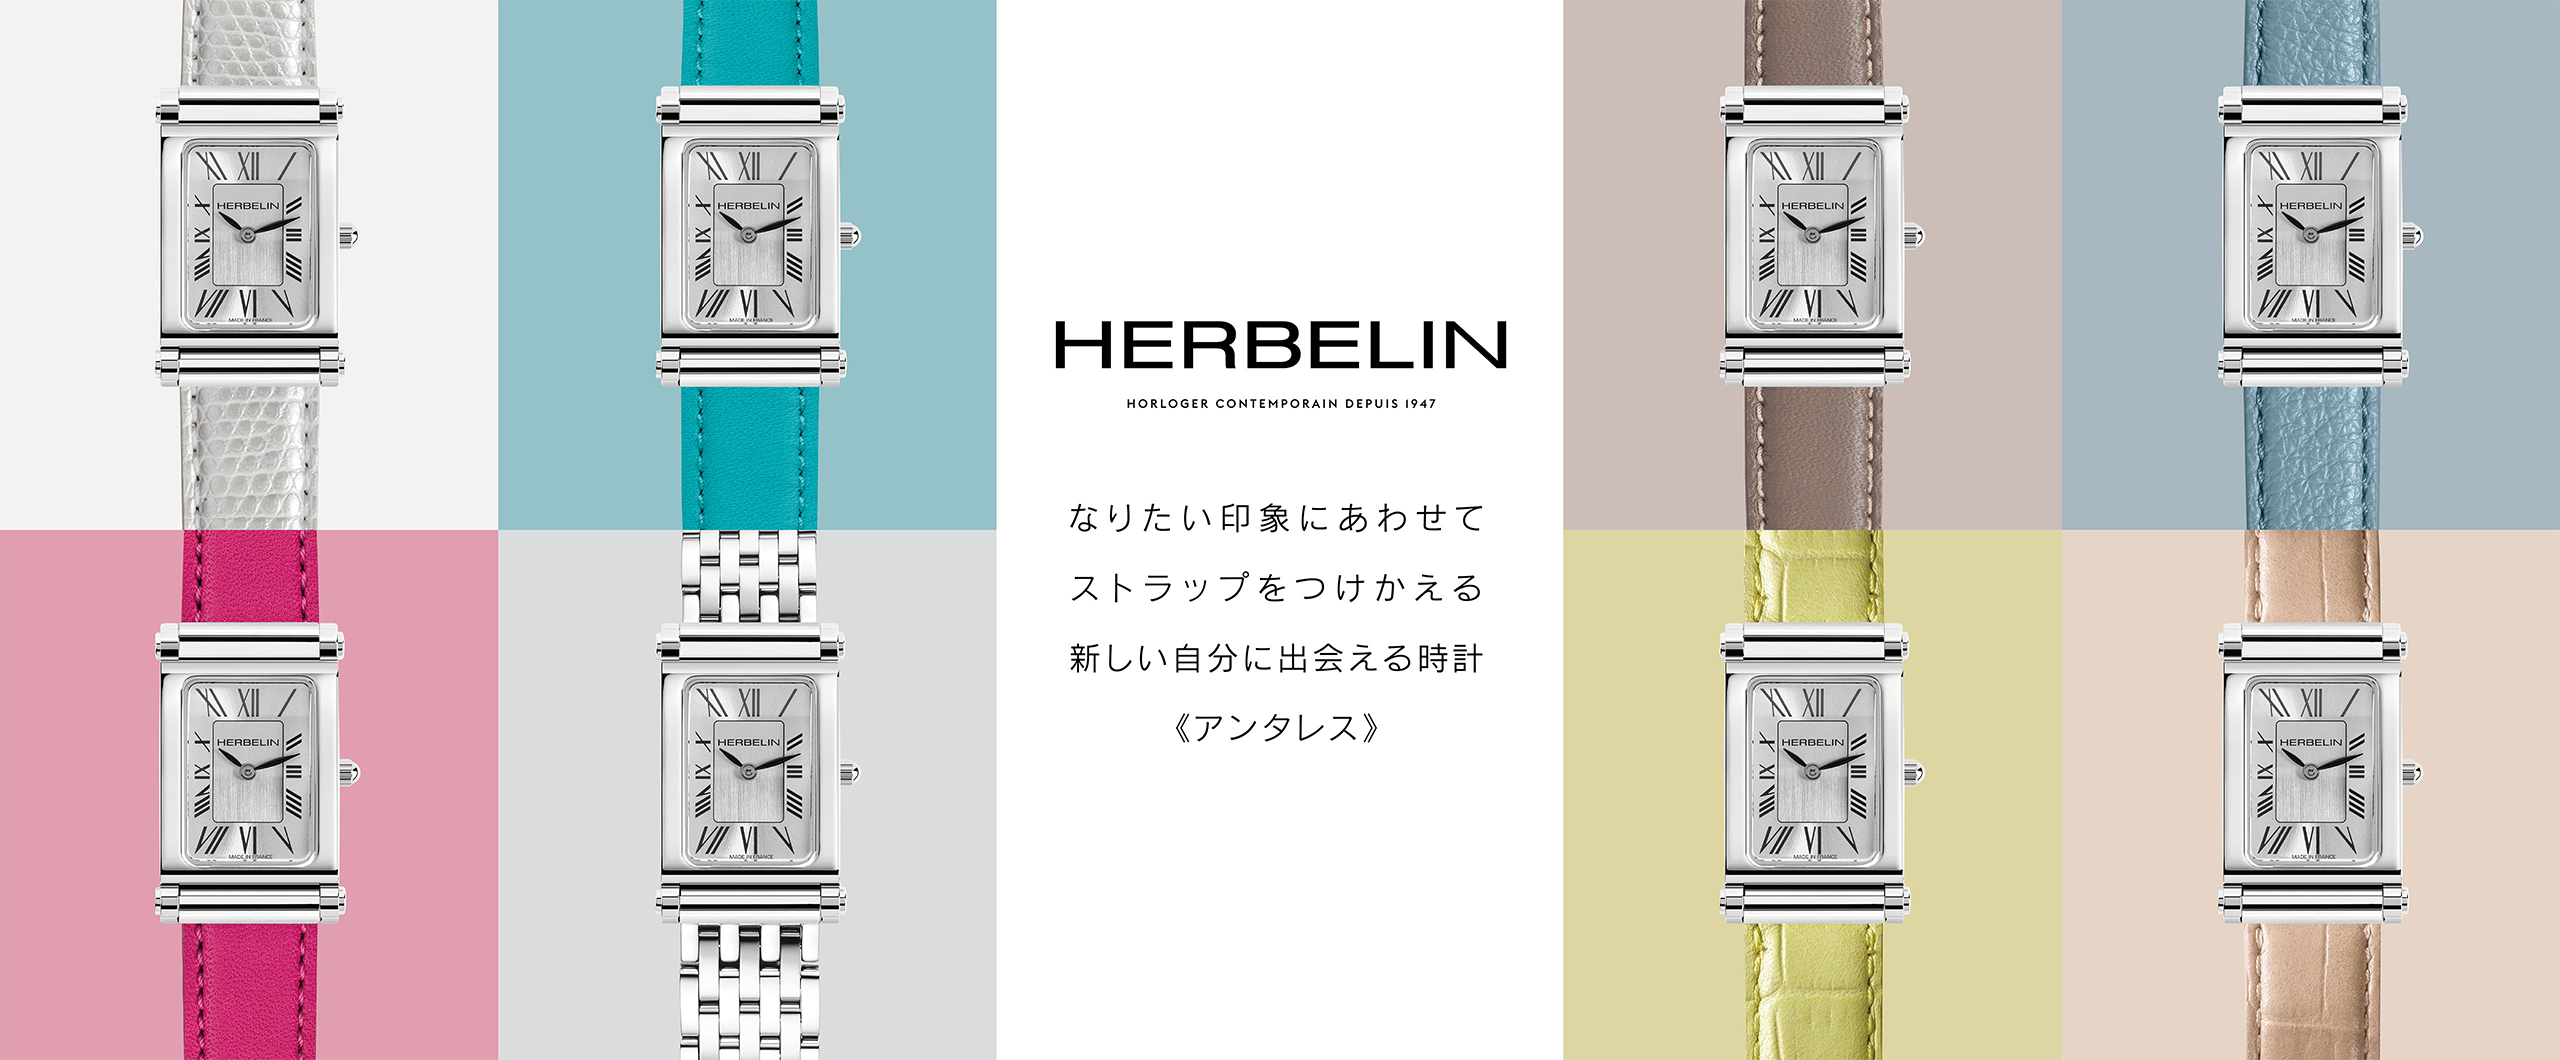 [Watch] HERBELIN